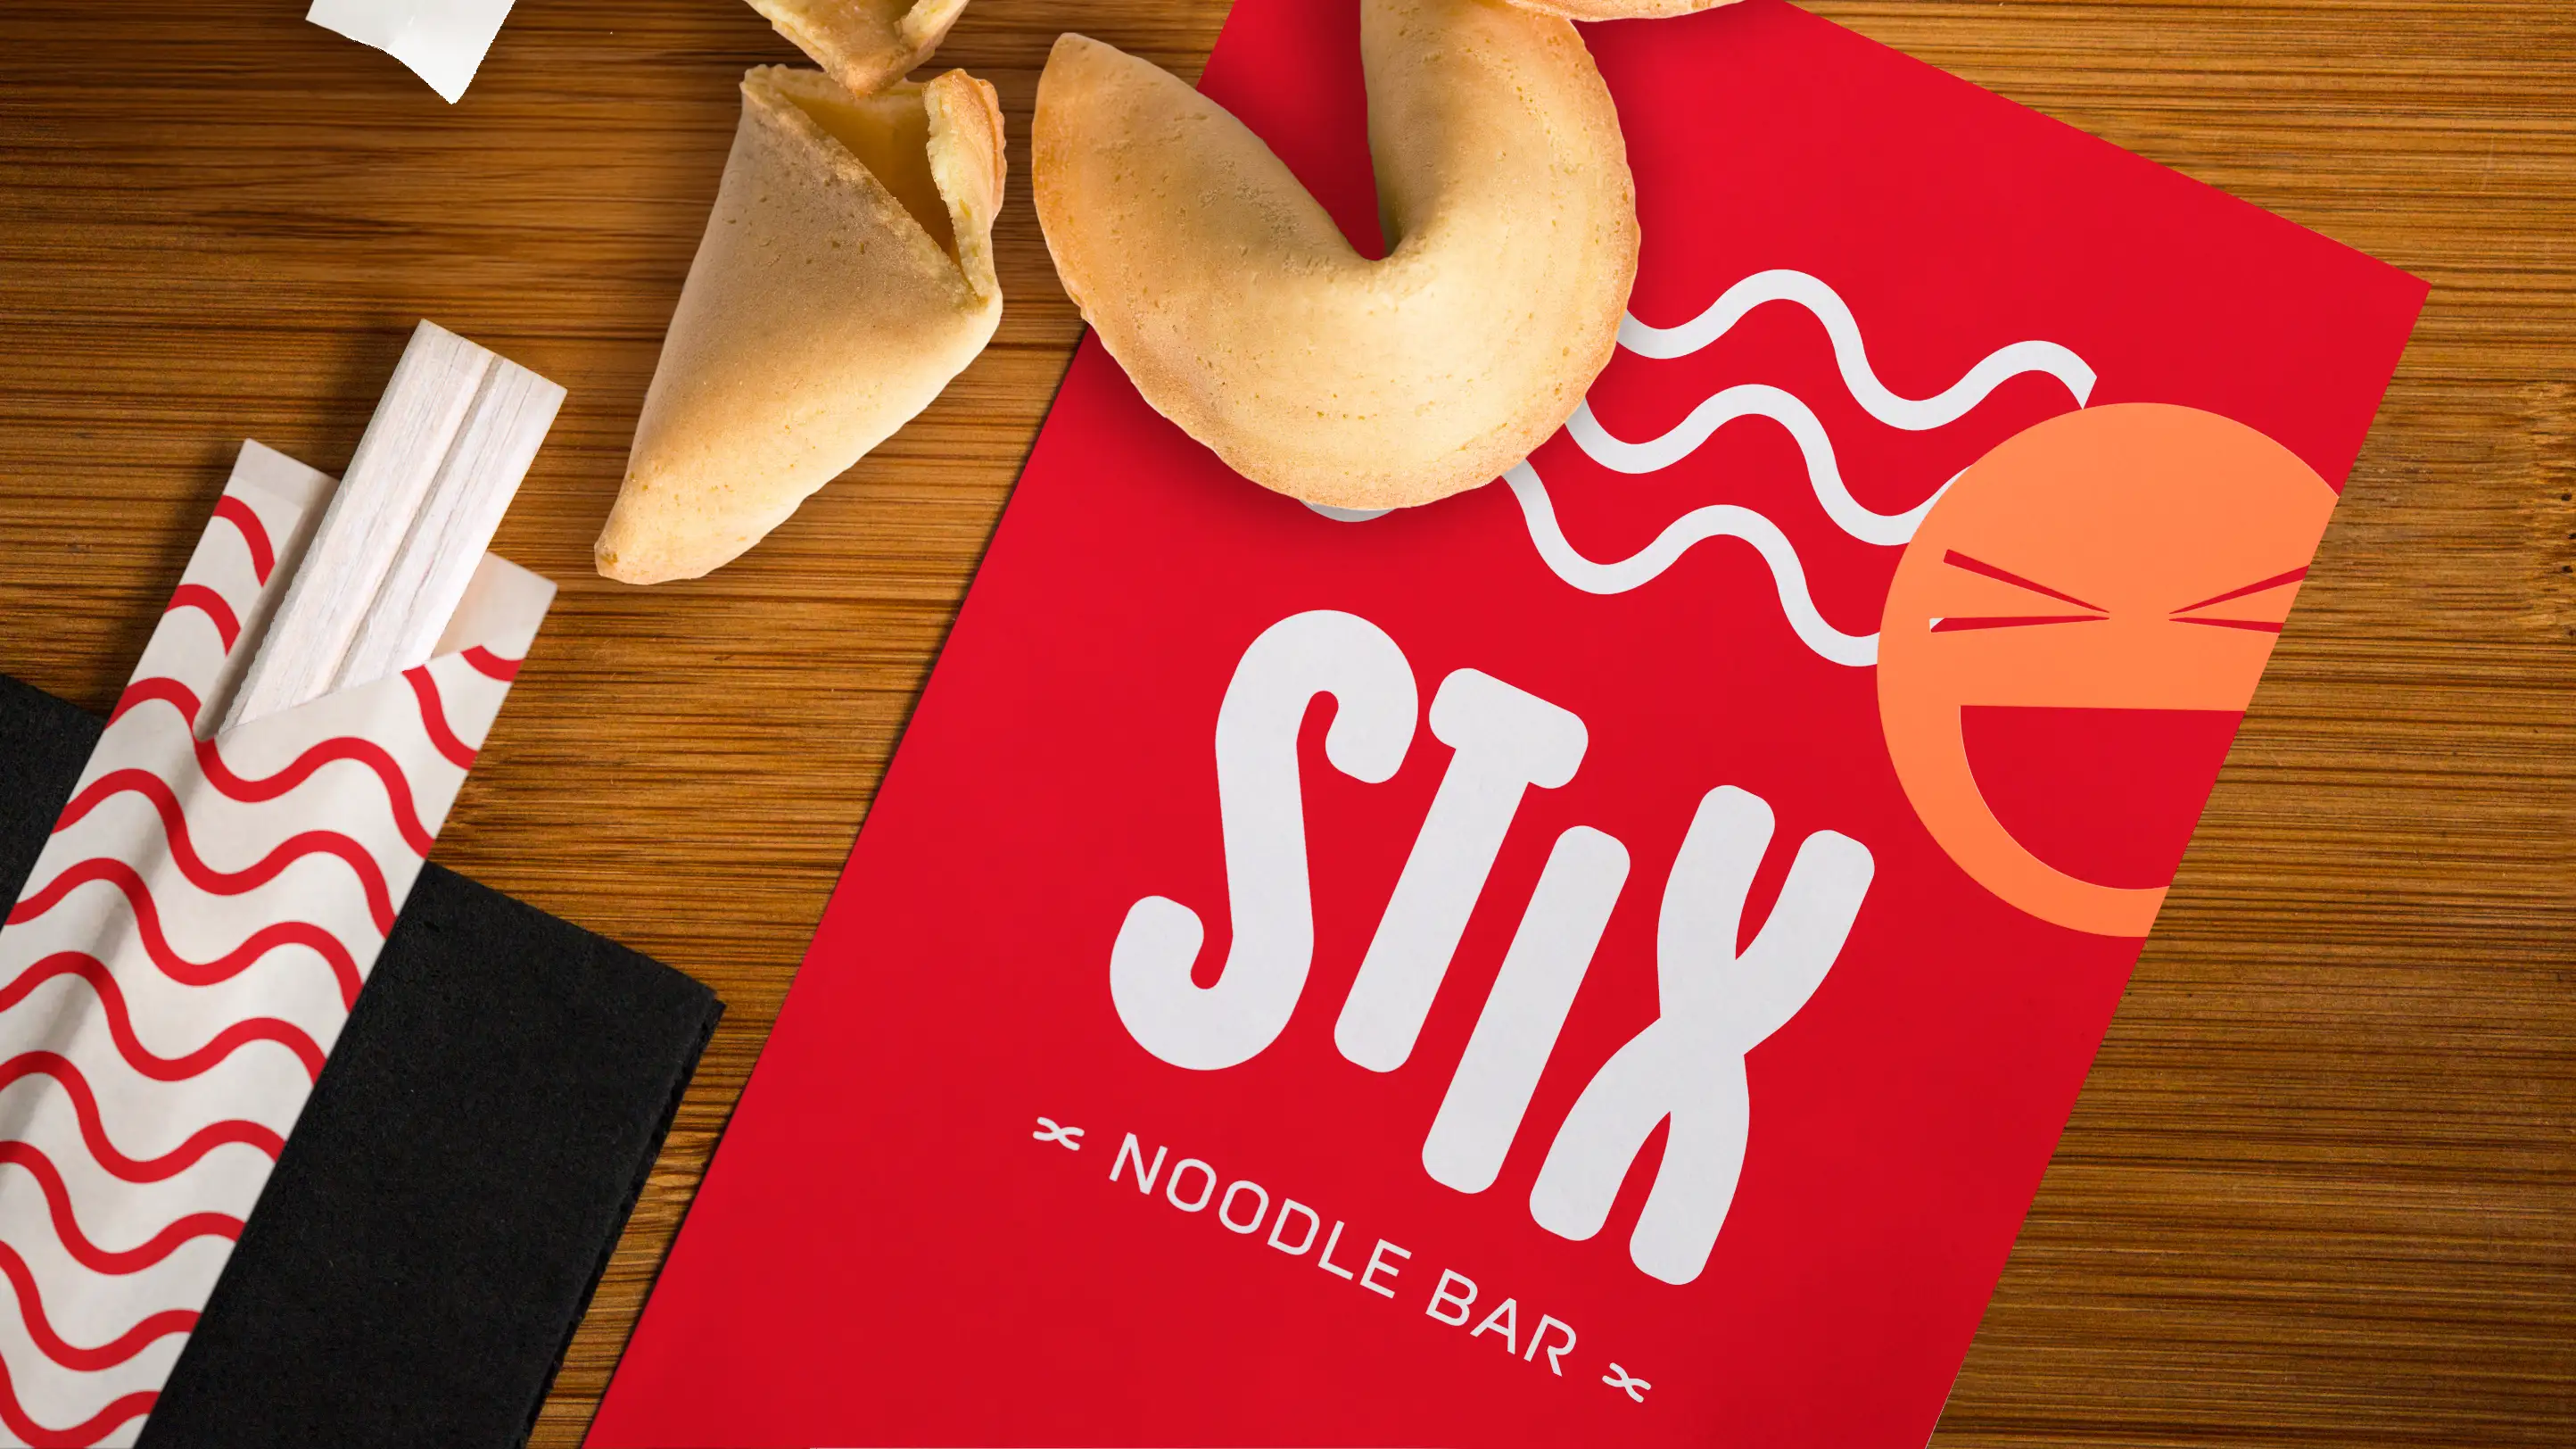 Stix logo design on menu cover.